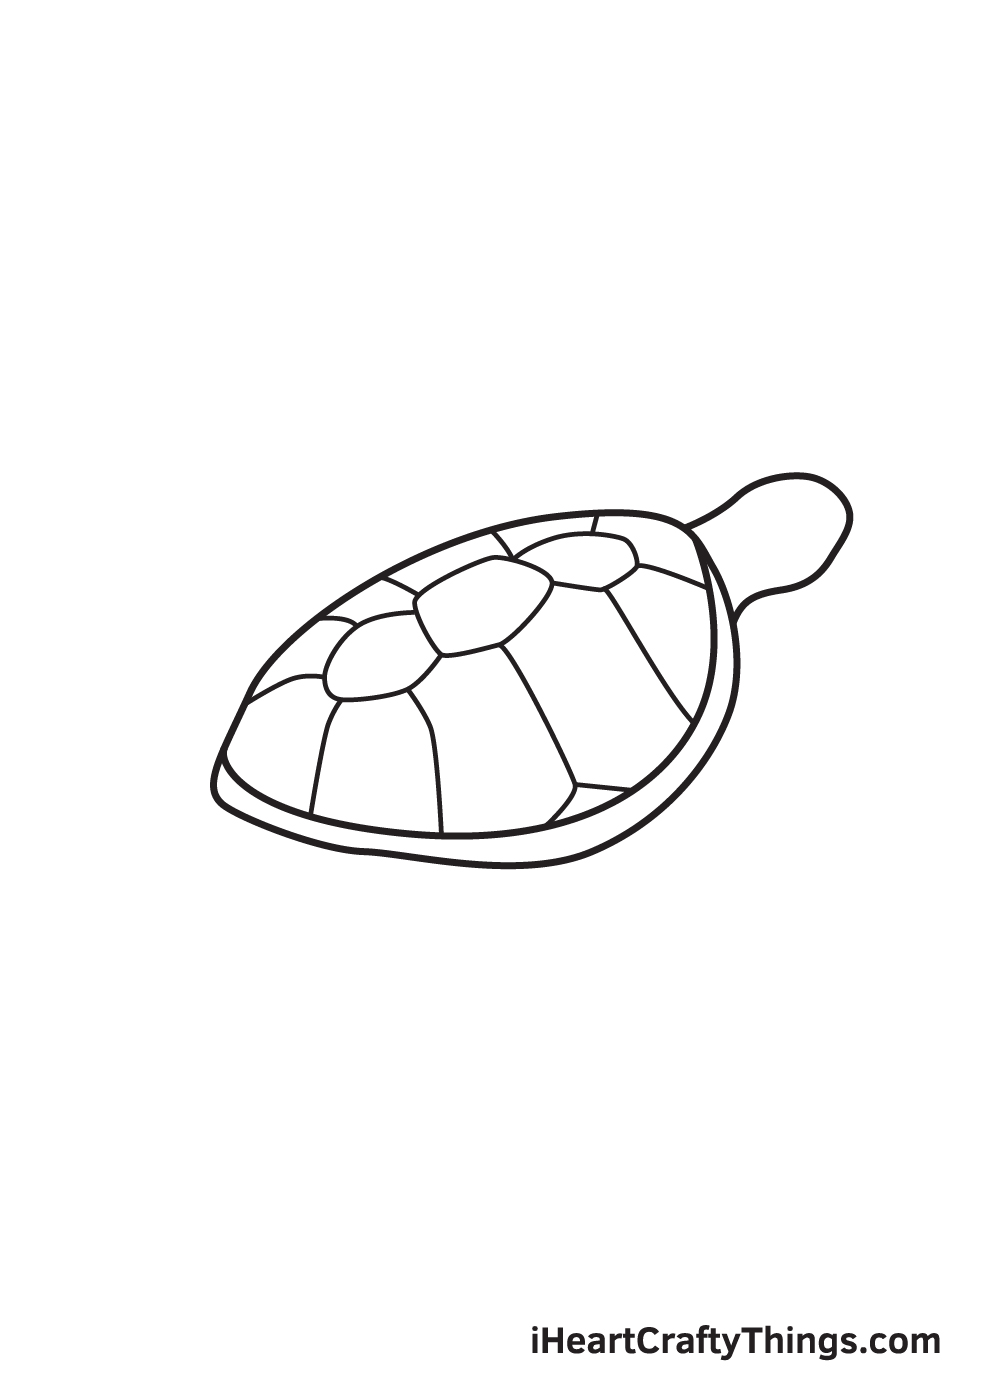 Hướng dẫn chi tiết cách vẽ con rùa từng bước